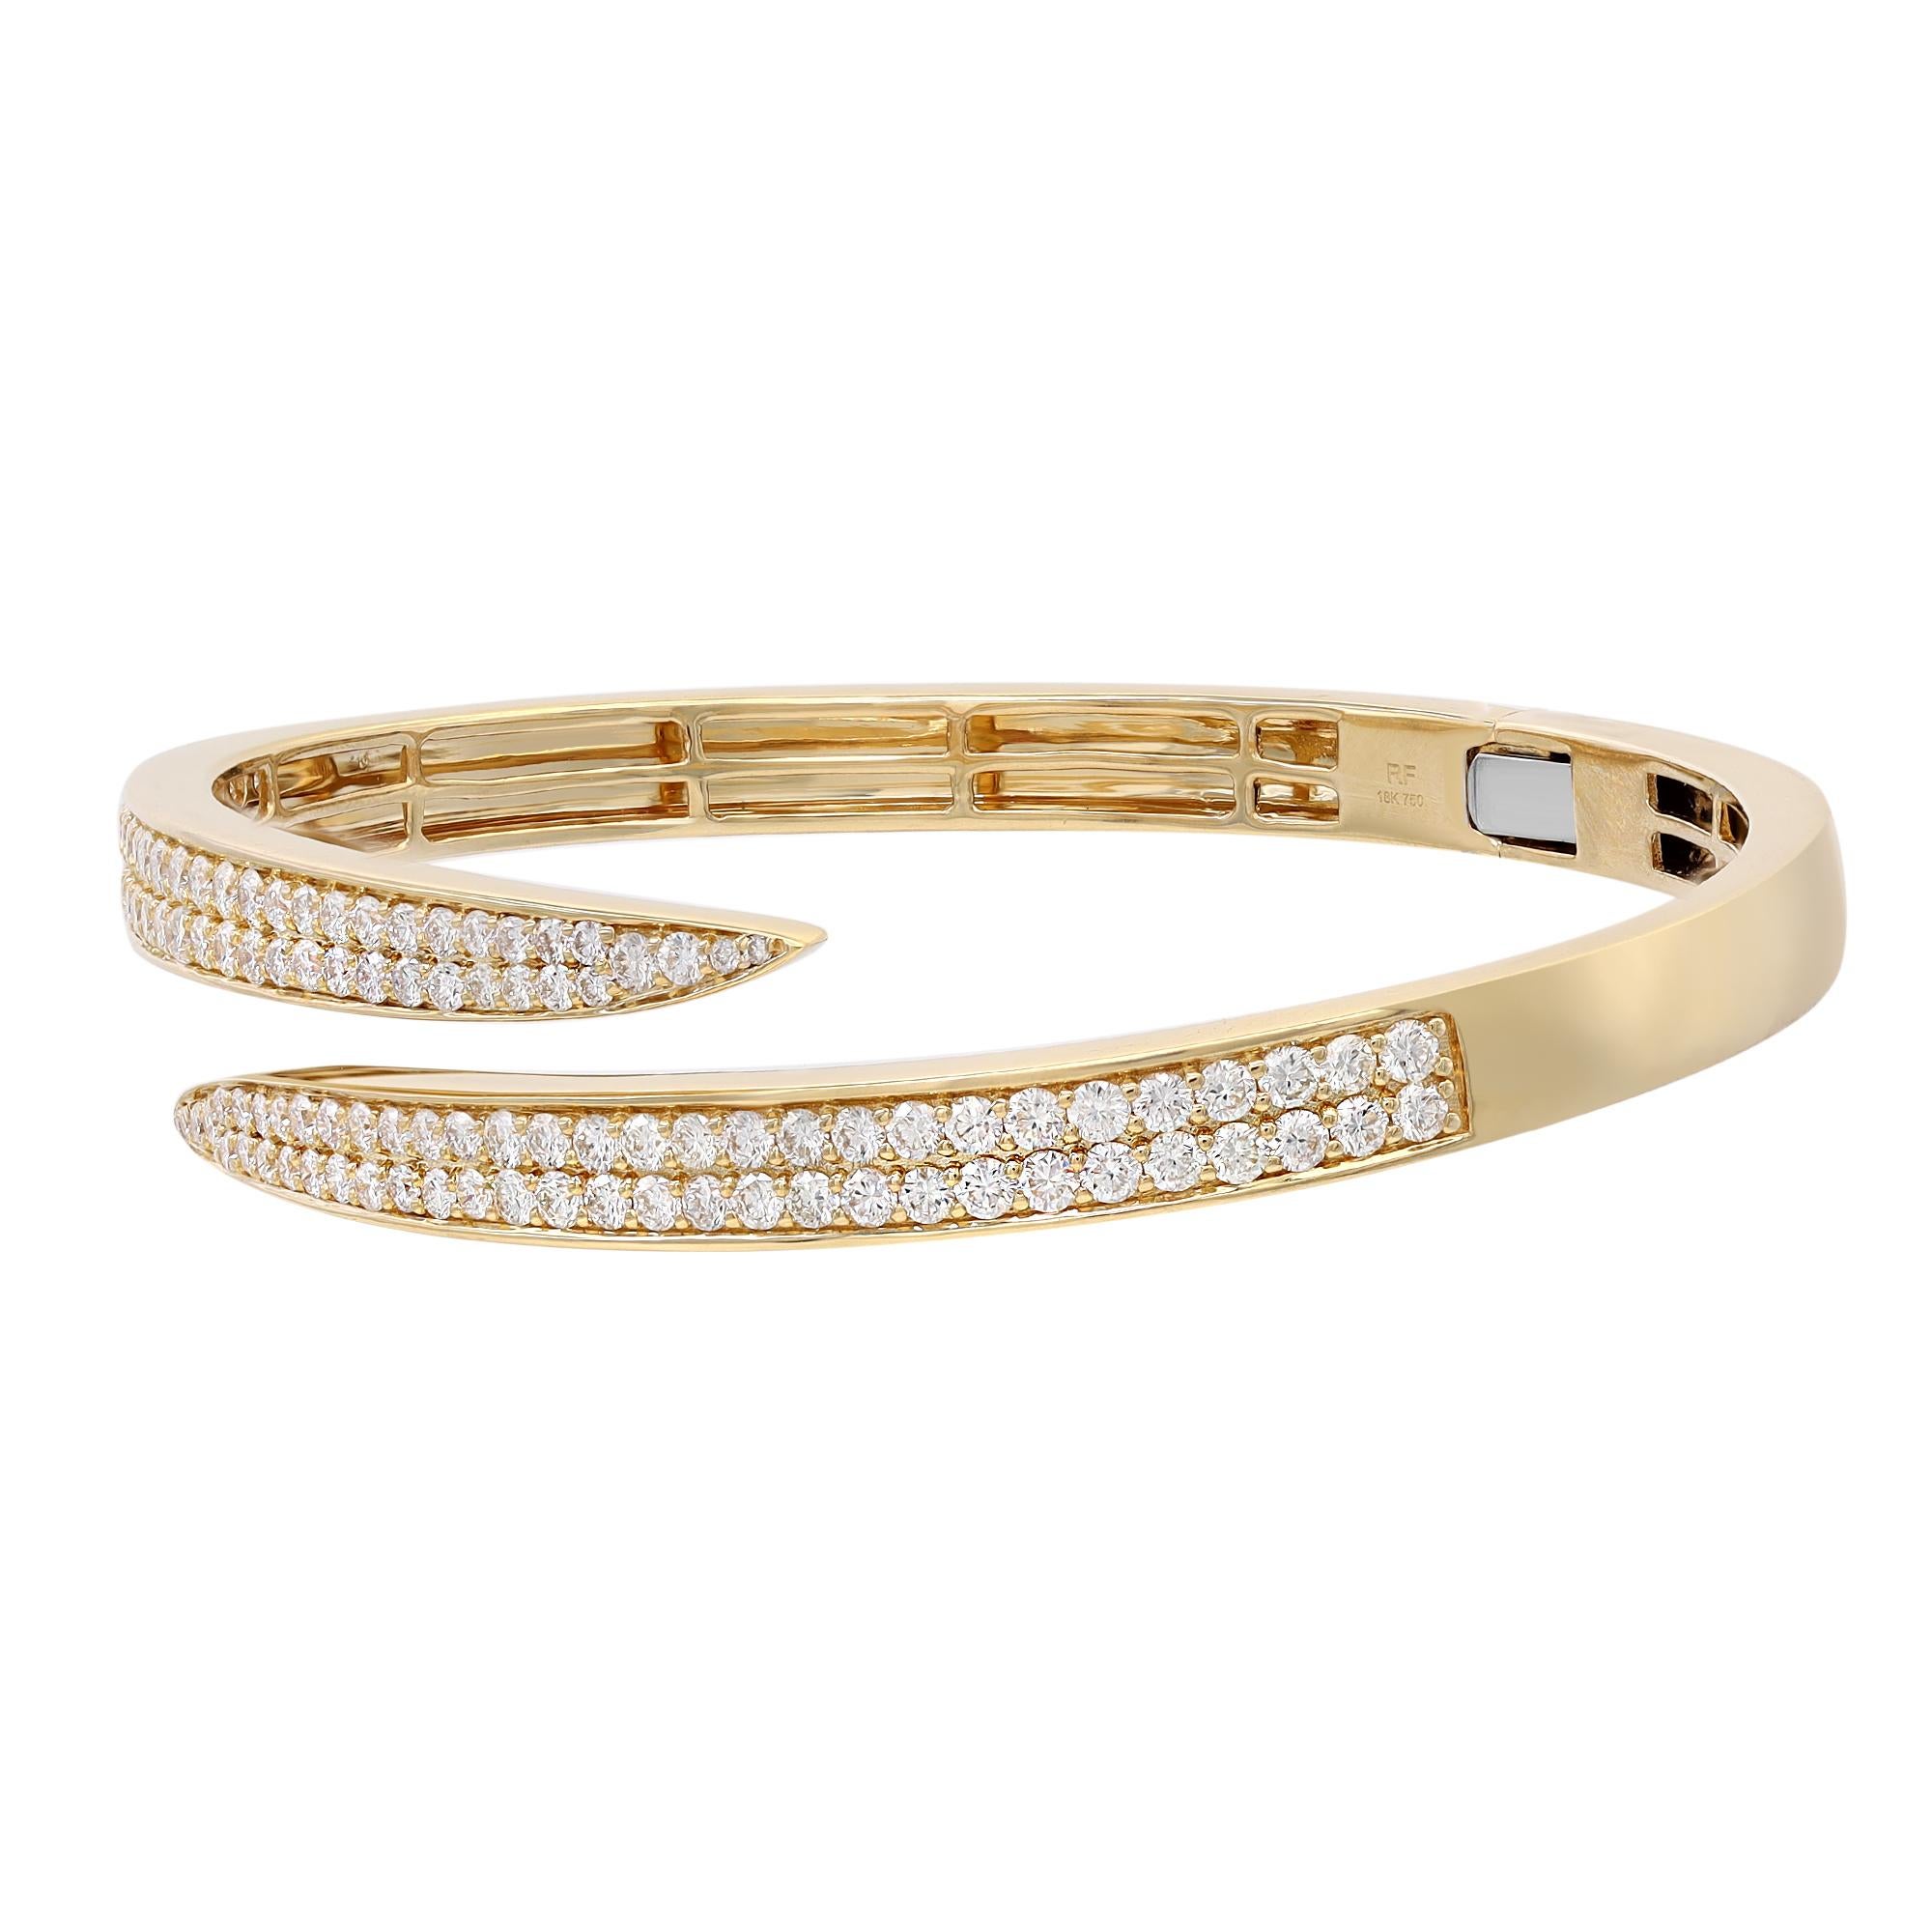 Lassen Sie Ihren Stil mit diesem klassischen und eleganten Diamant-Armband erstrahlen. Der Armreif ist auf halber Höhe mit weißen, natürlichen, runden Diamanten besetzt, die in Pflastertechnik gefasst sind. Gefertigt aus feinem, hochglanzpoliertem